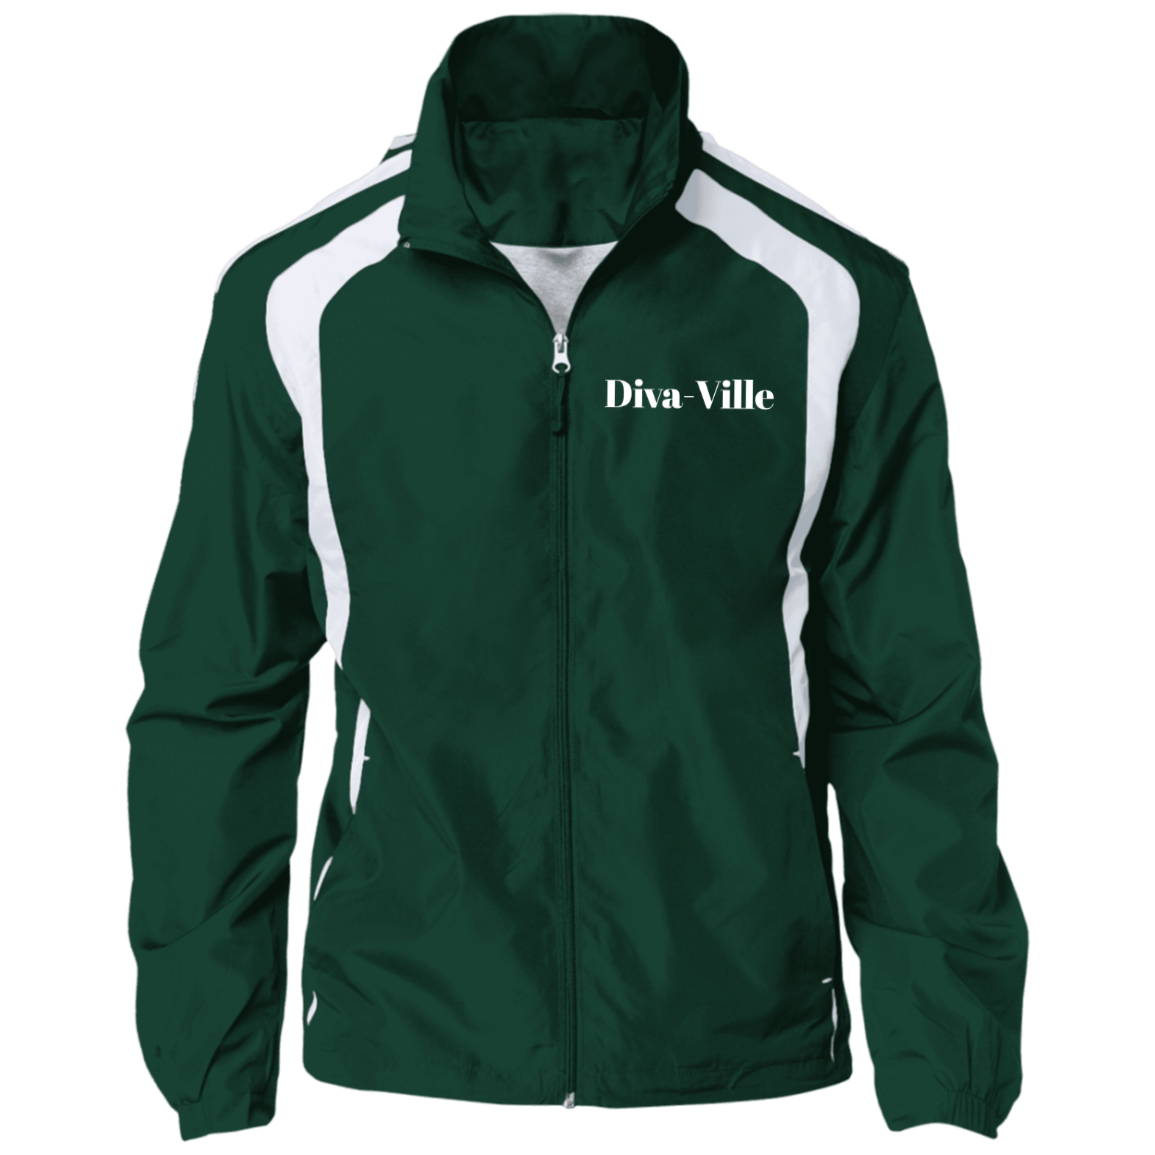 Diva Ville Jersey-Lined Jacket